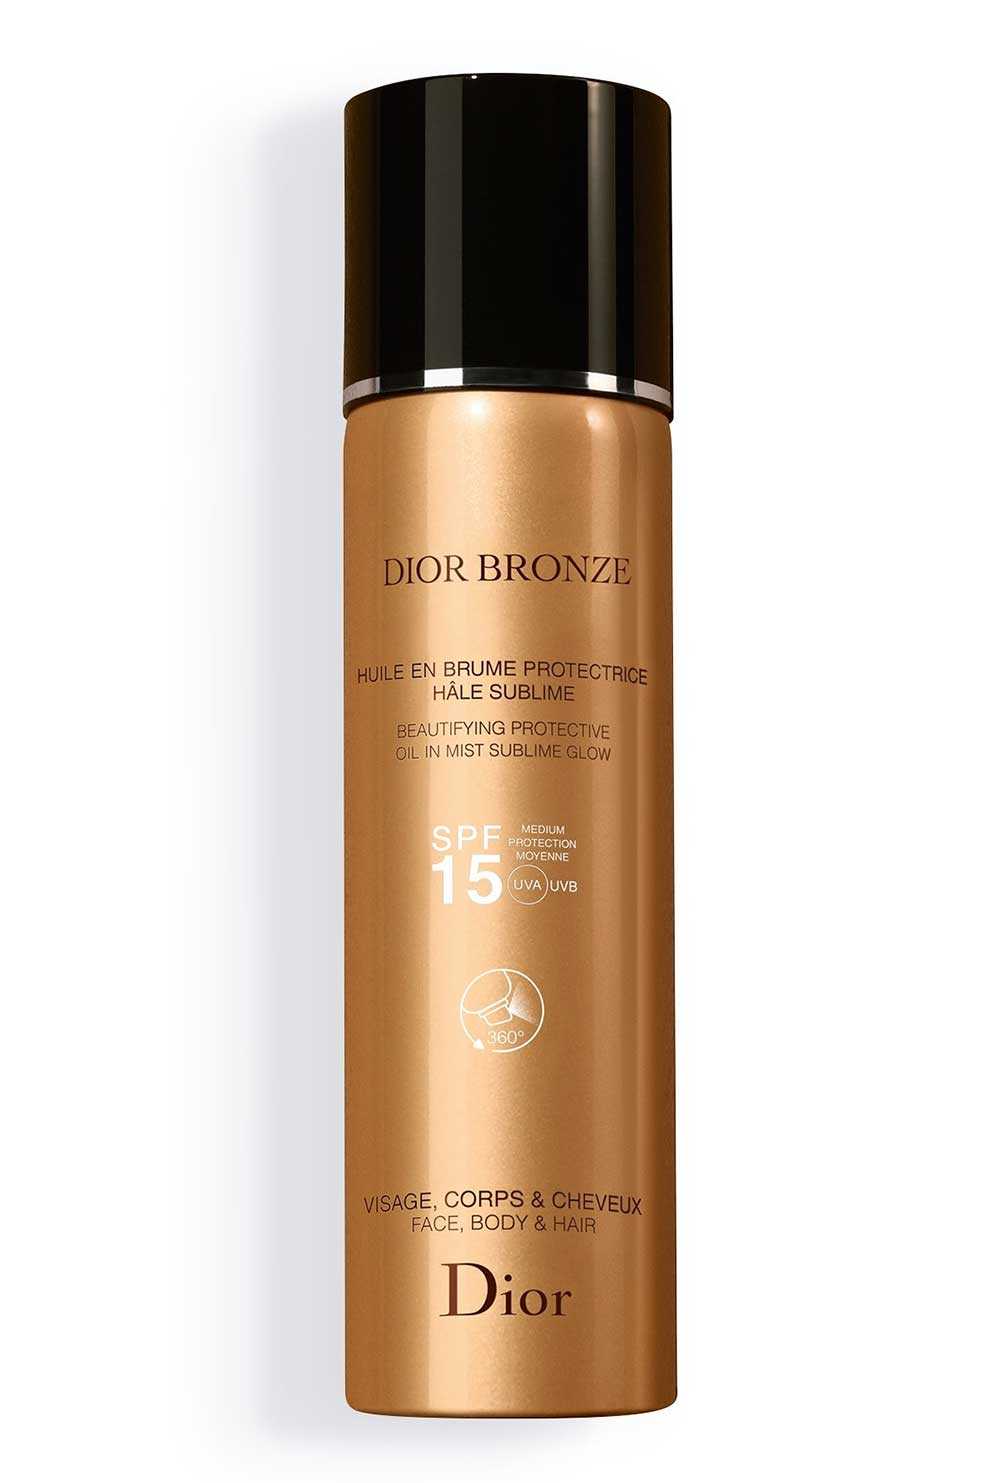 Dior Bronze olio solare spray spf 15